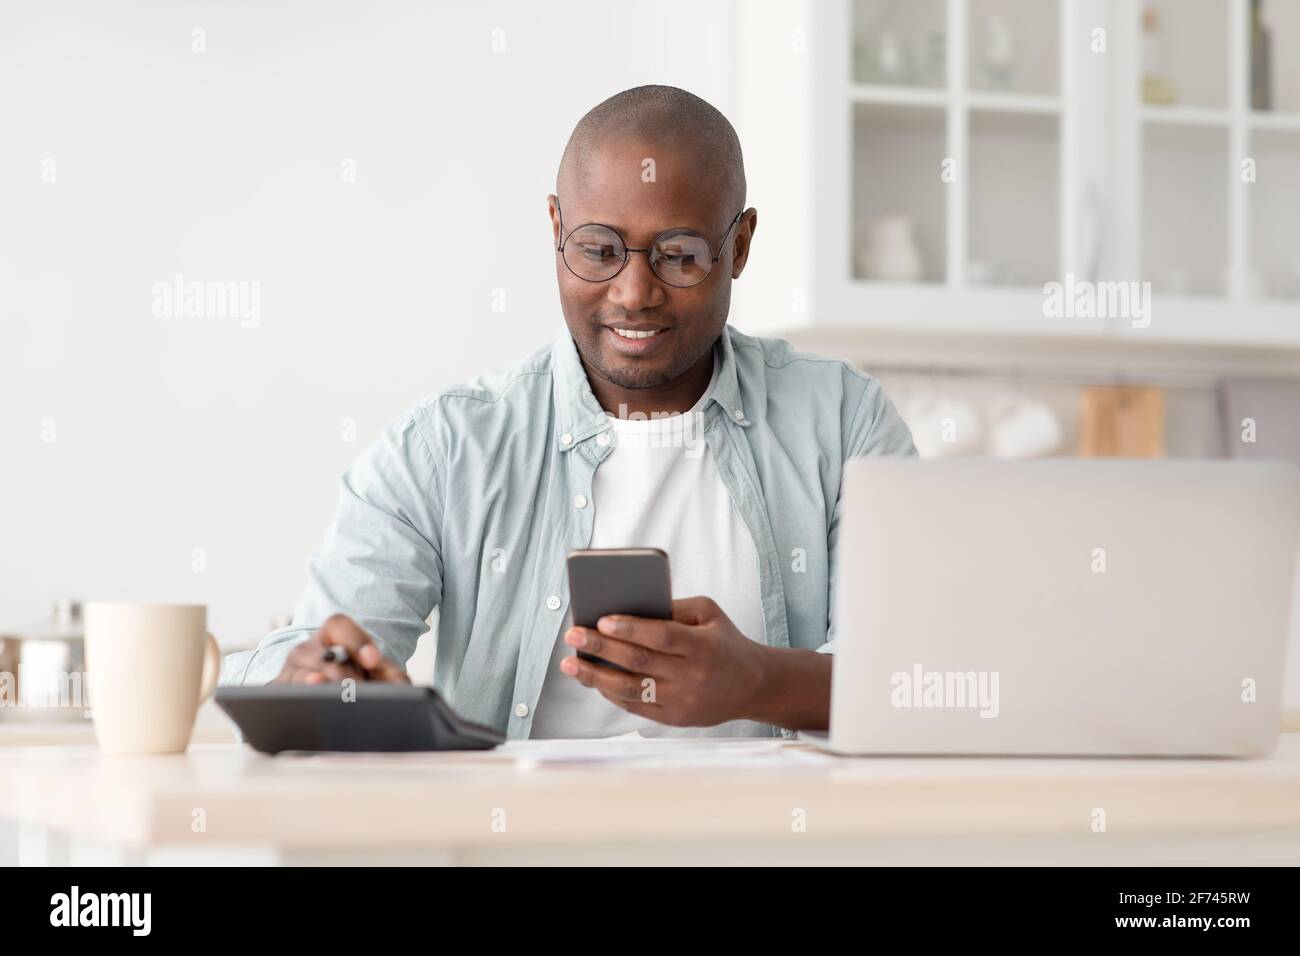 Concept d'épargne et de finances. Homme noir mature utilisant une calculatrice, un téléphone et un ordinateur portable Banque D'Images